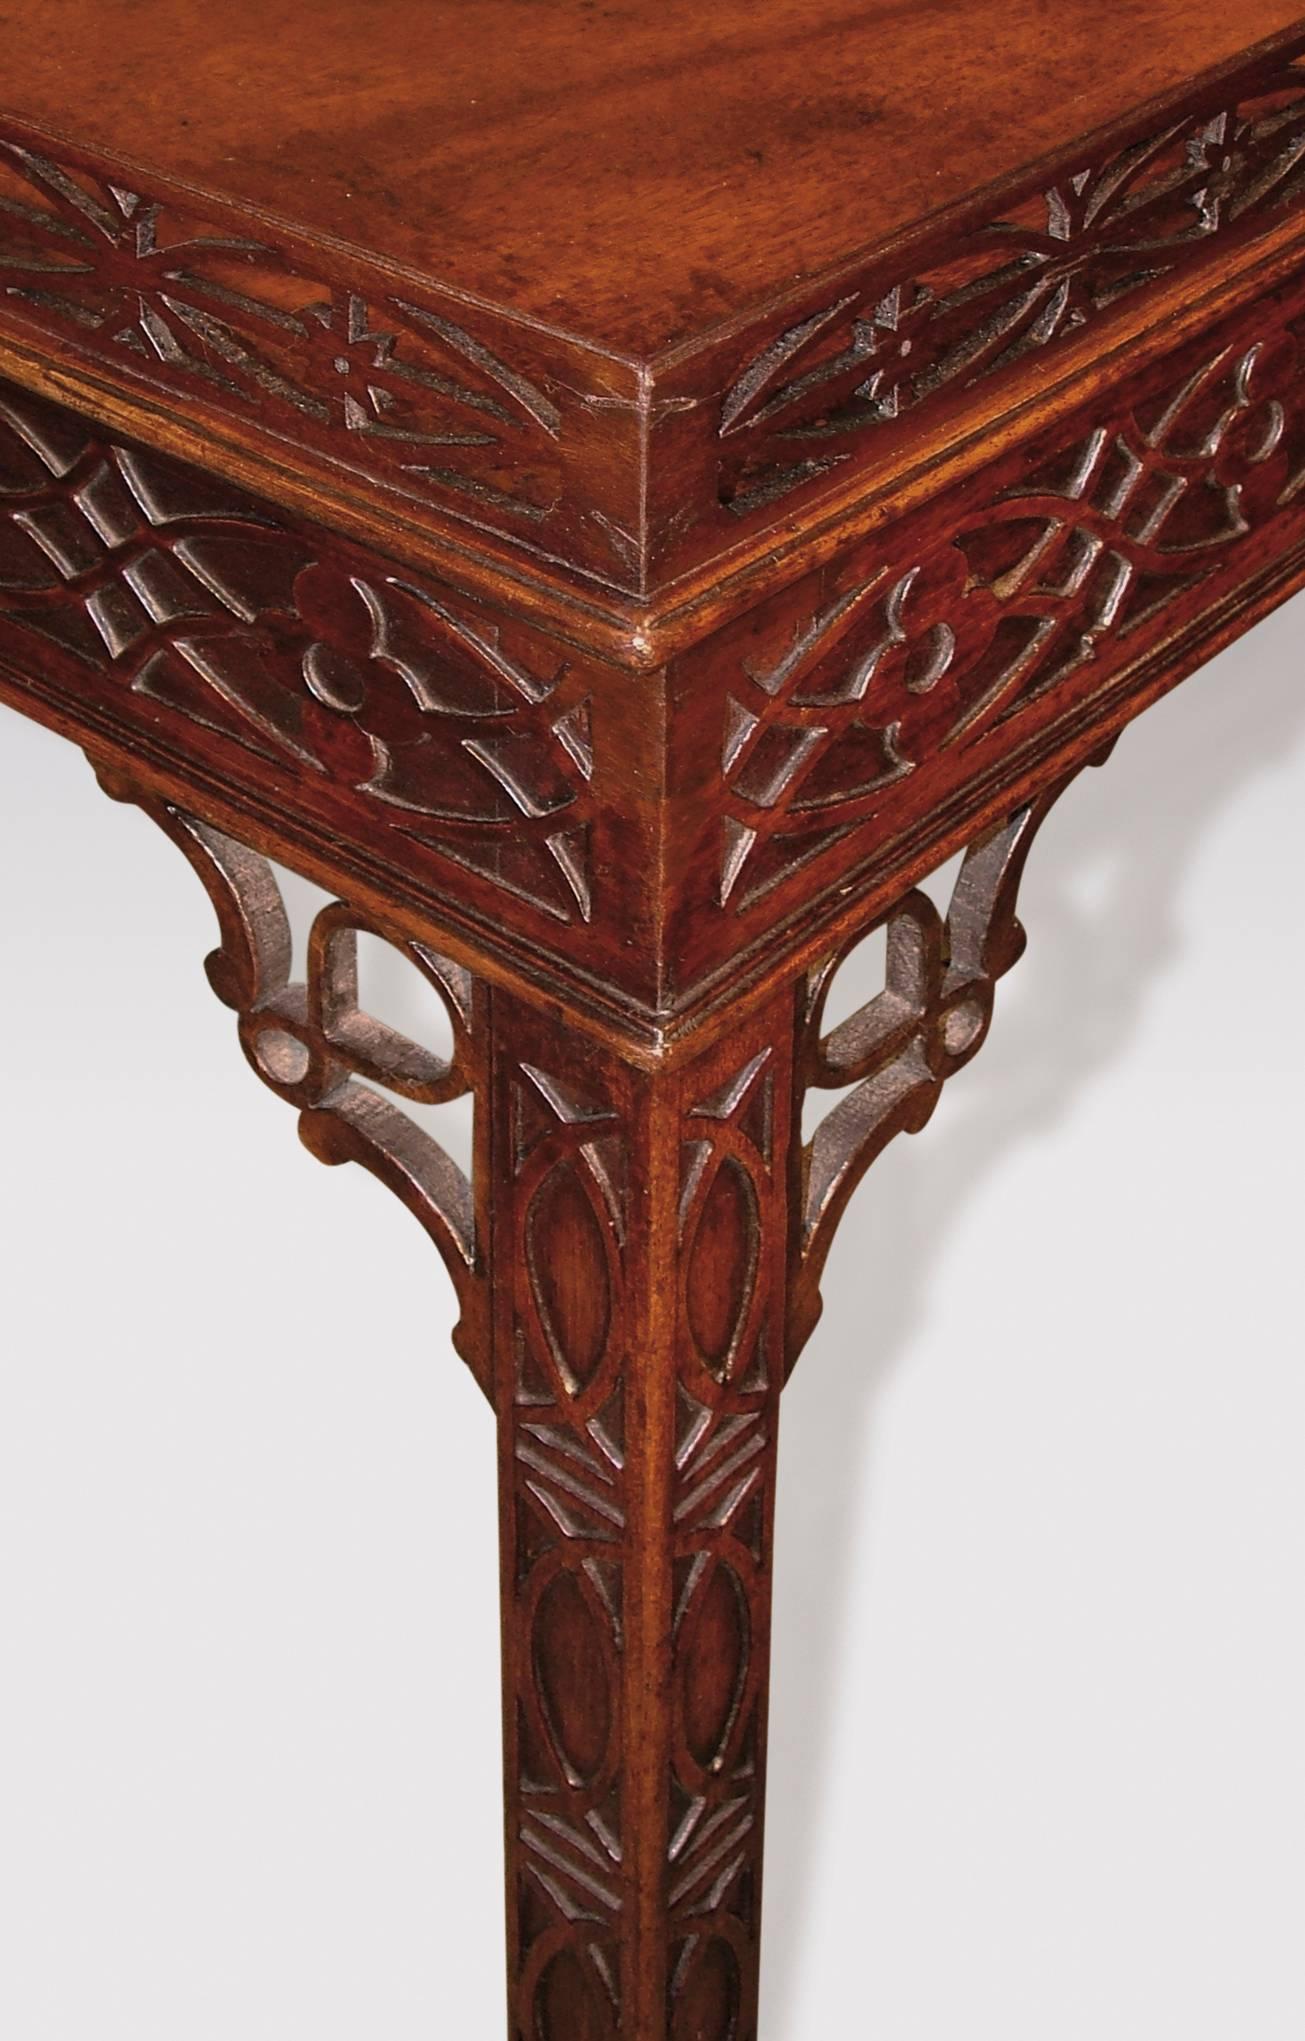 Une belle table d'argenterie du milieu du 18e siècle, de la période Chippendale, en acajou bien figuré, avec une galerie ovale et percée d'un arc gothique, au-dessus d'une frise aveugle similaire. La table est dotée de consoles d'angle entrelacées,